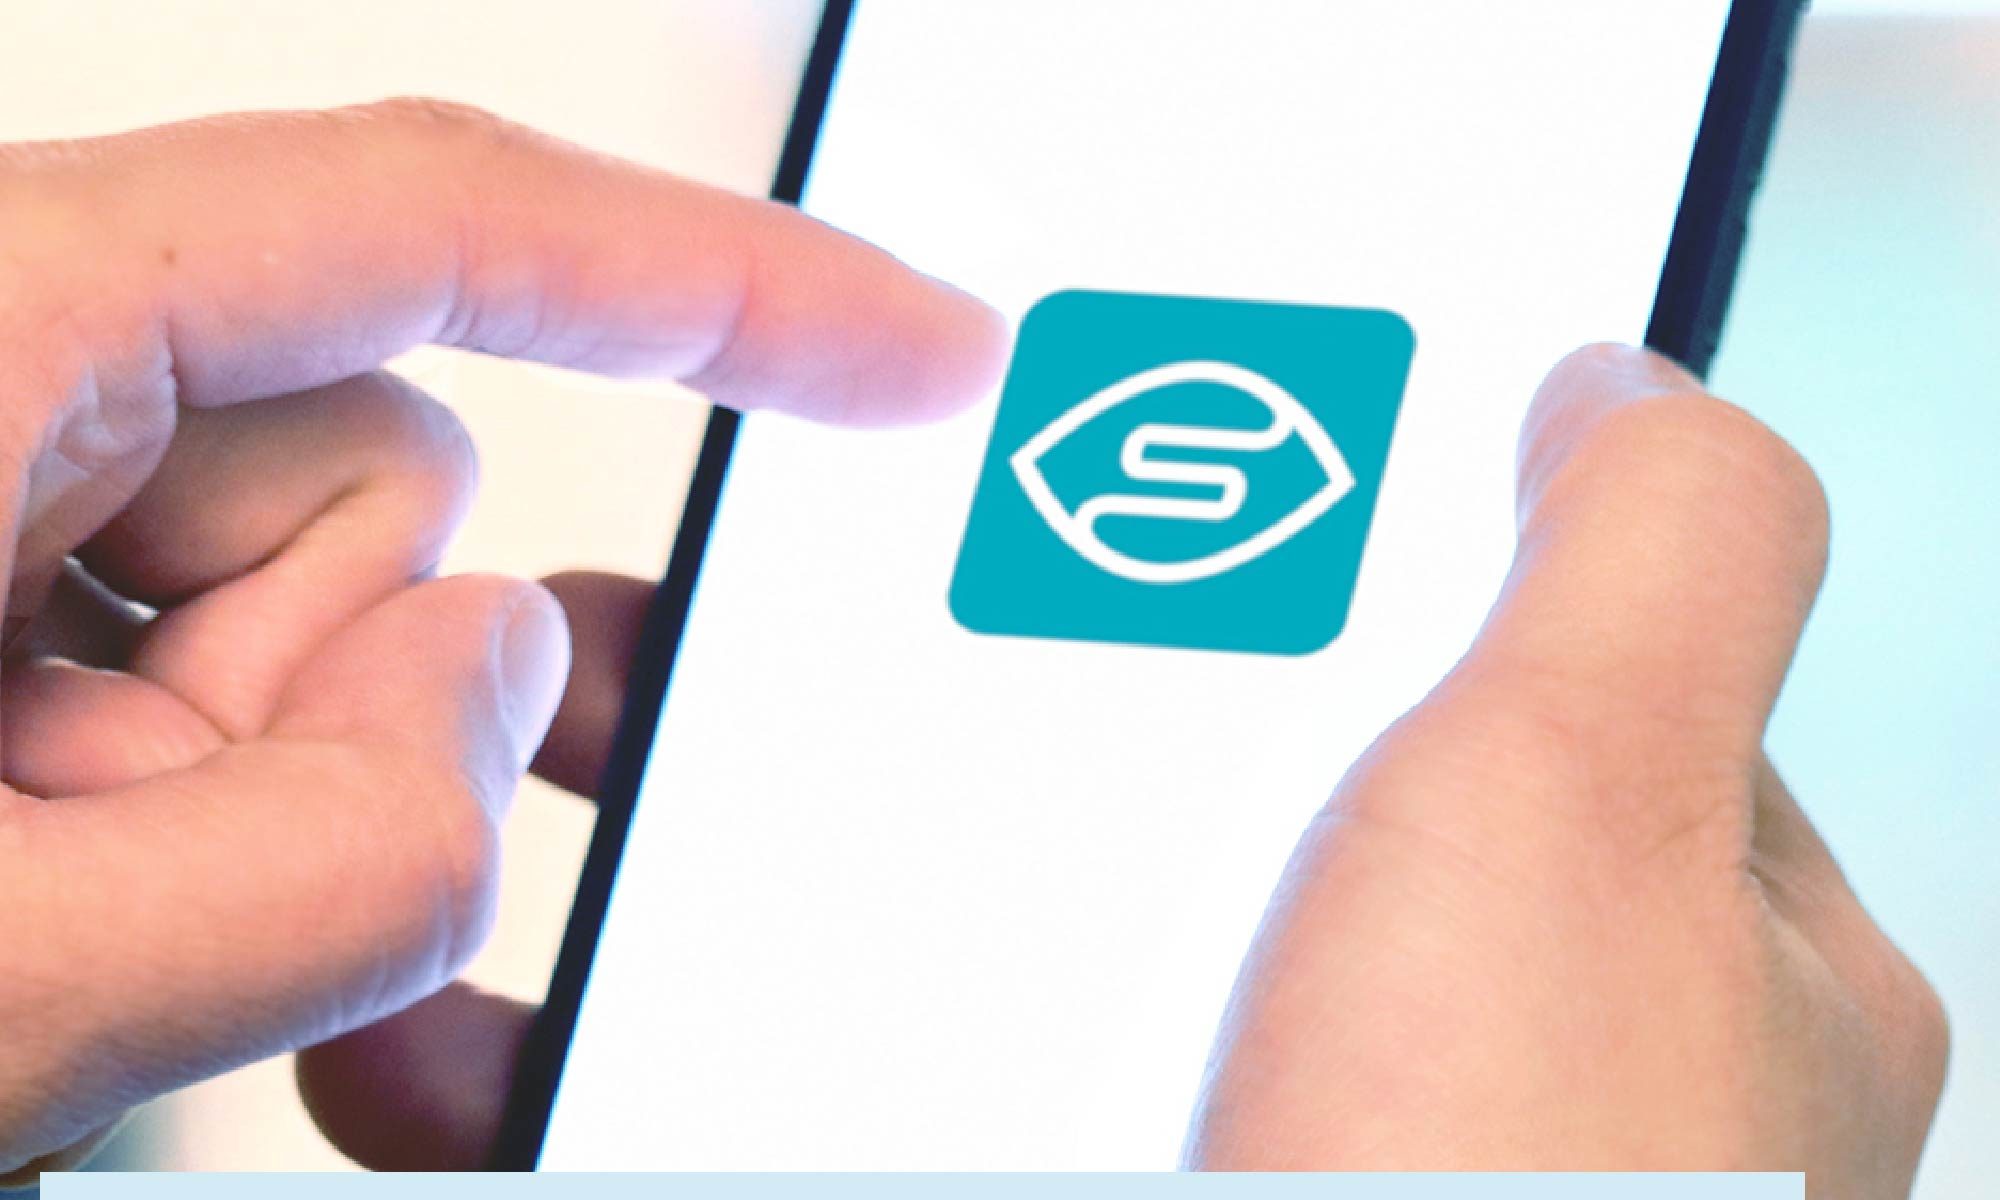 foto de uma mão segurando um smartphone com a logo do aplicativo Seeing AI em destaque. Está escrito: "Apps para pessoas com deficiência visual: Seeing AI" #tecnologiaassistiva e há a logo da Retina Brasil